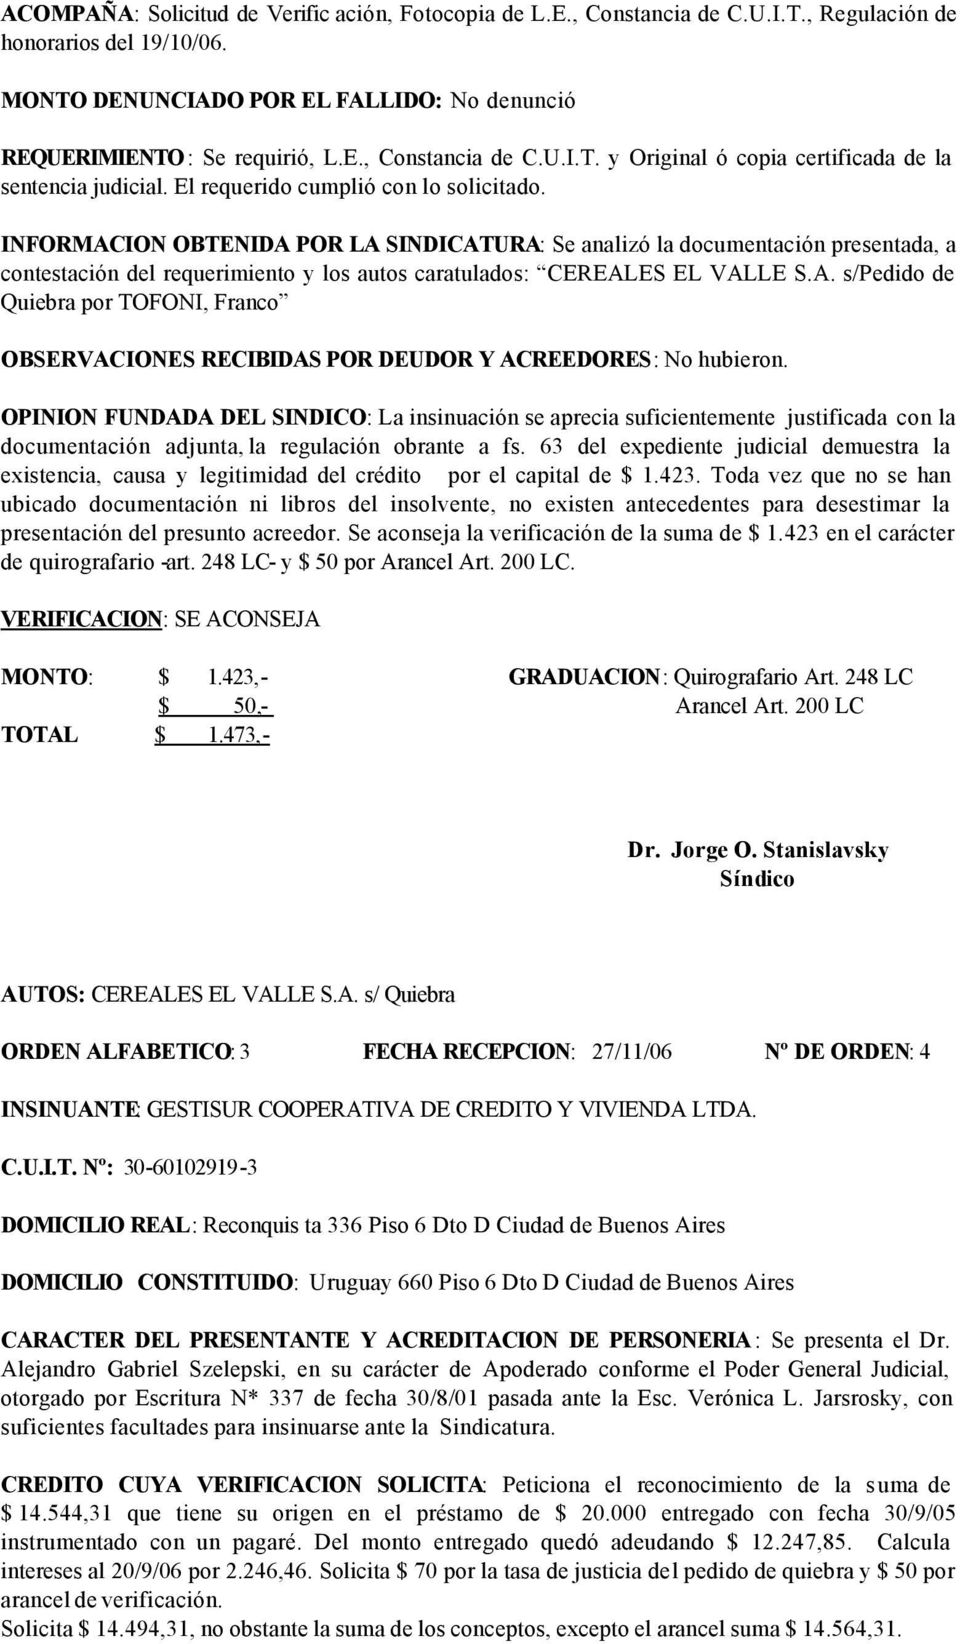 A. s/pedido de Quiebra por TOFONI, Franco OPINION FUNDADA DEL SINDICO: La insinuación se aprecia suficientemente justificada con la documentación adjunta, la regulación obrante a fs.